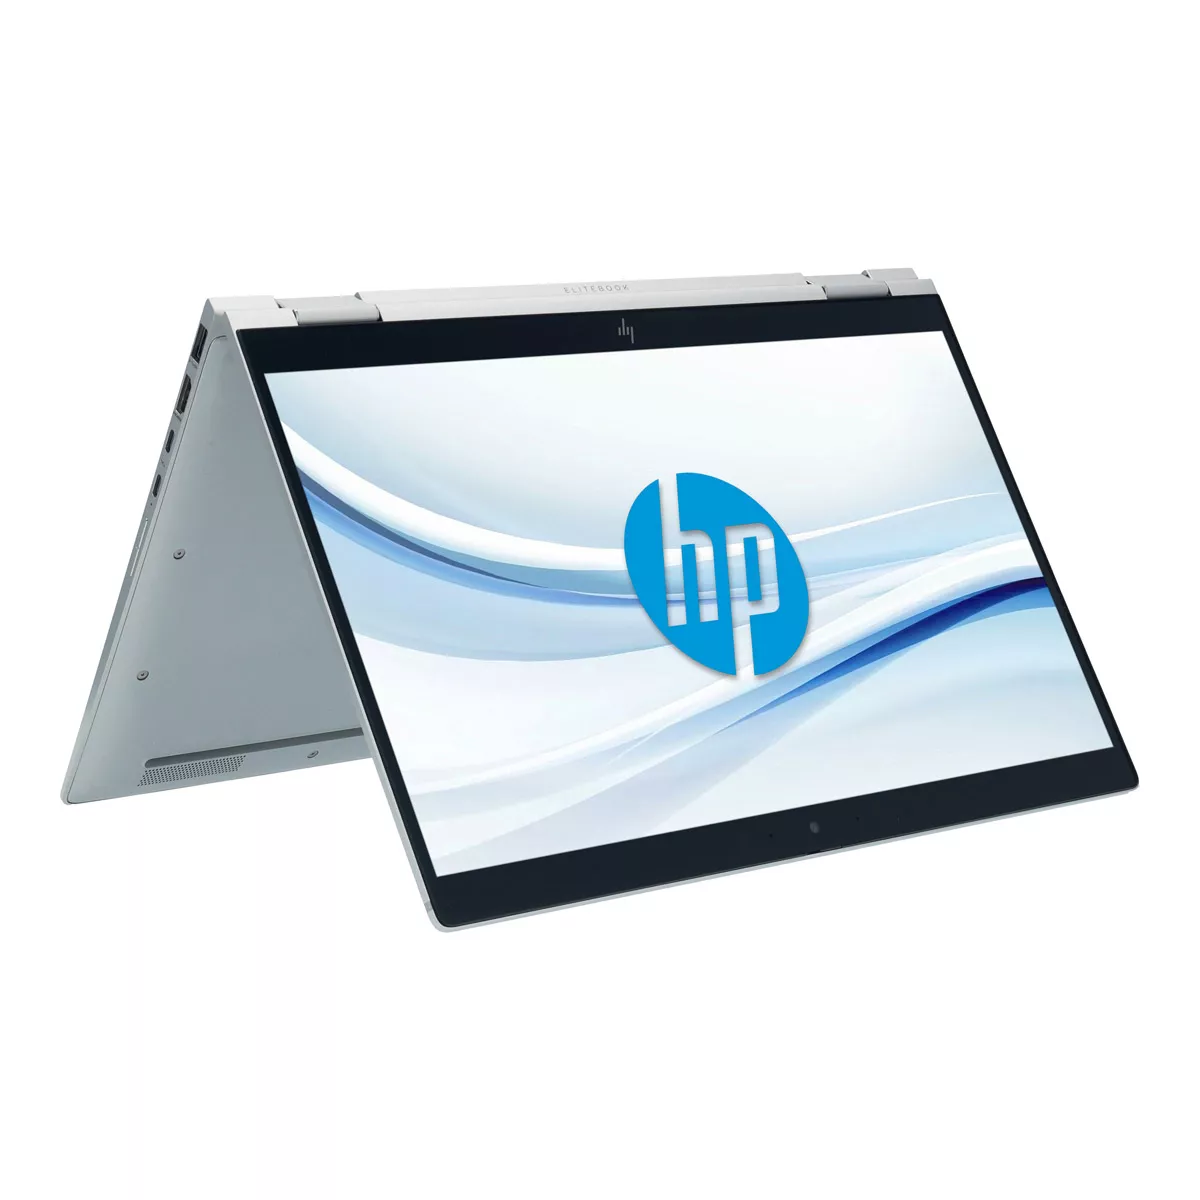 HP EliteBook x360 1040 G6 Core i5 8365U 16 GB 500 GB M.2 nVME SSD Touch Webcam A